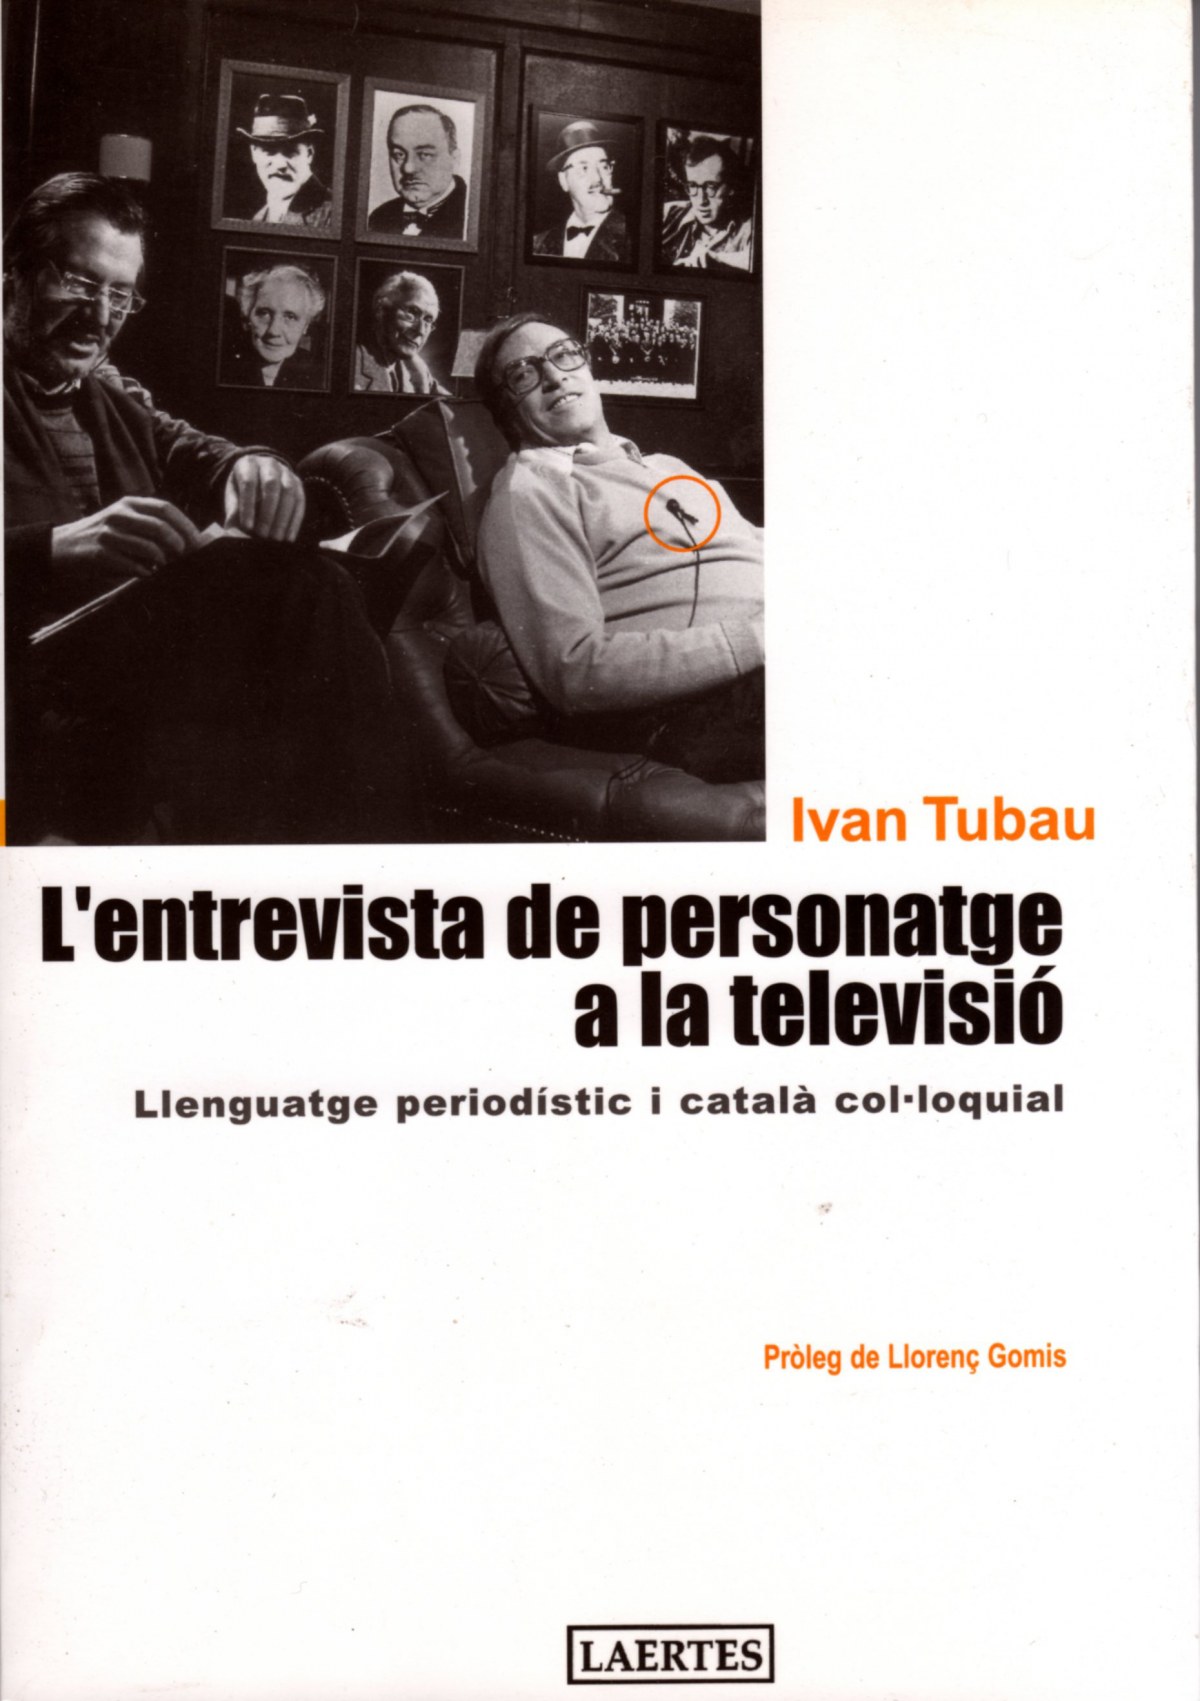 L'entrevista de personatge a la televisió LLenguatge period­stic i cat - Tubau, Ivan